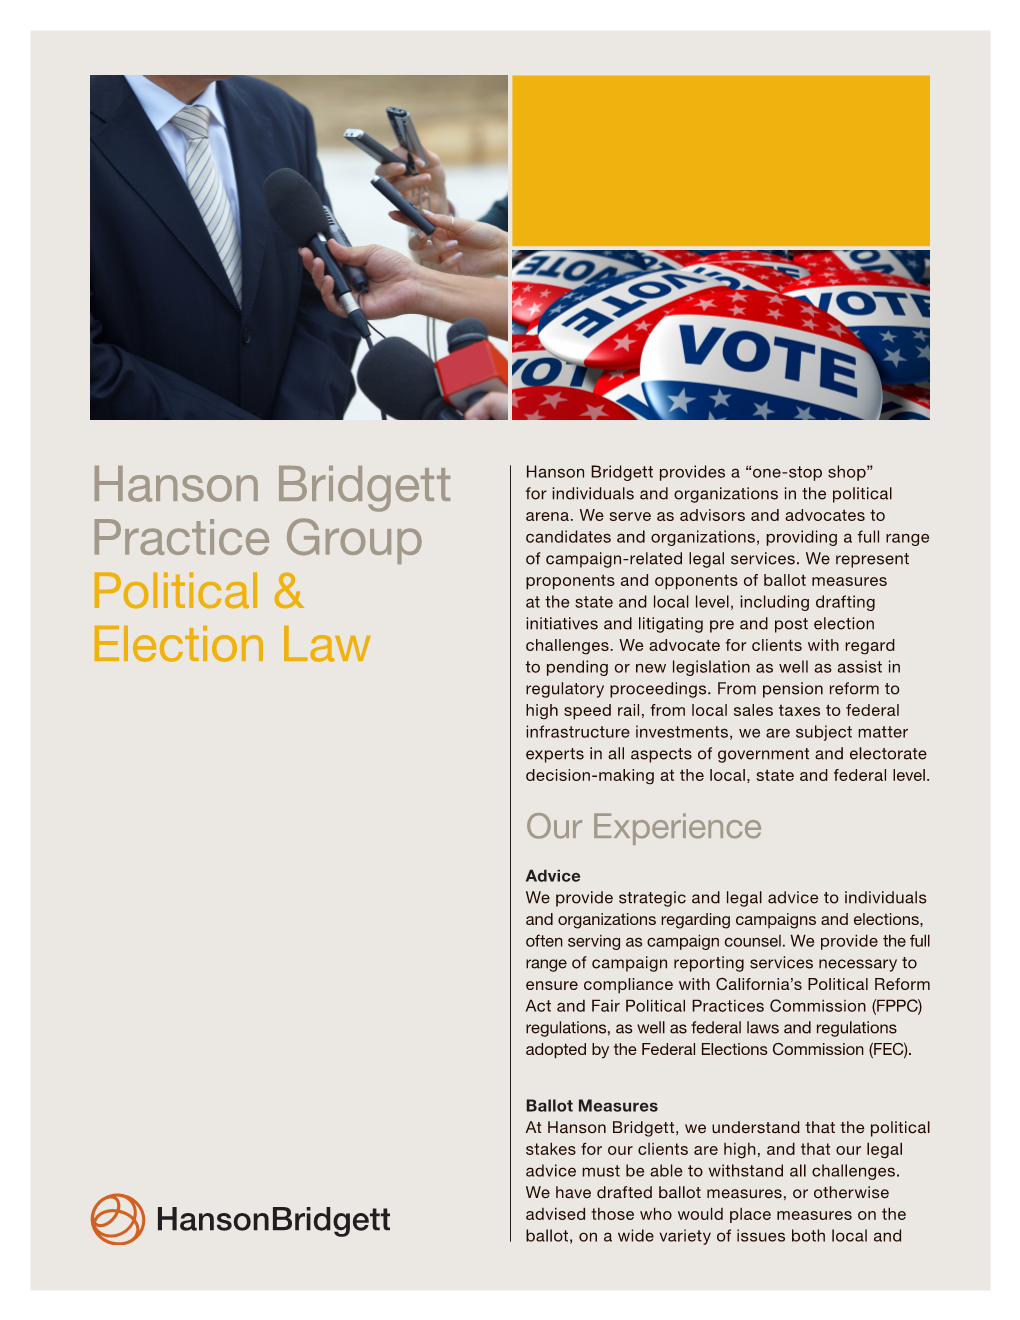 Hanson Bridgett Practice Group Political & Election